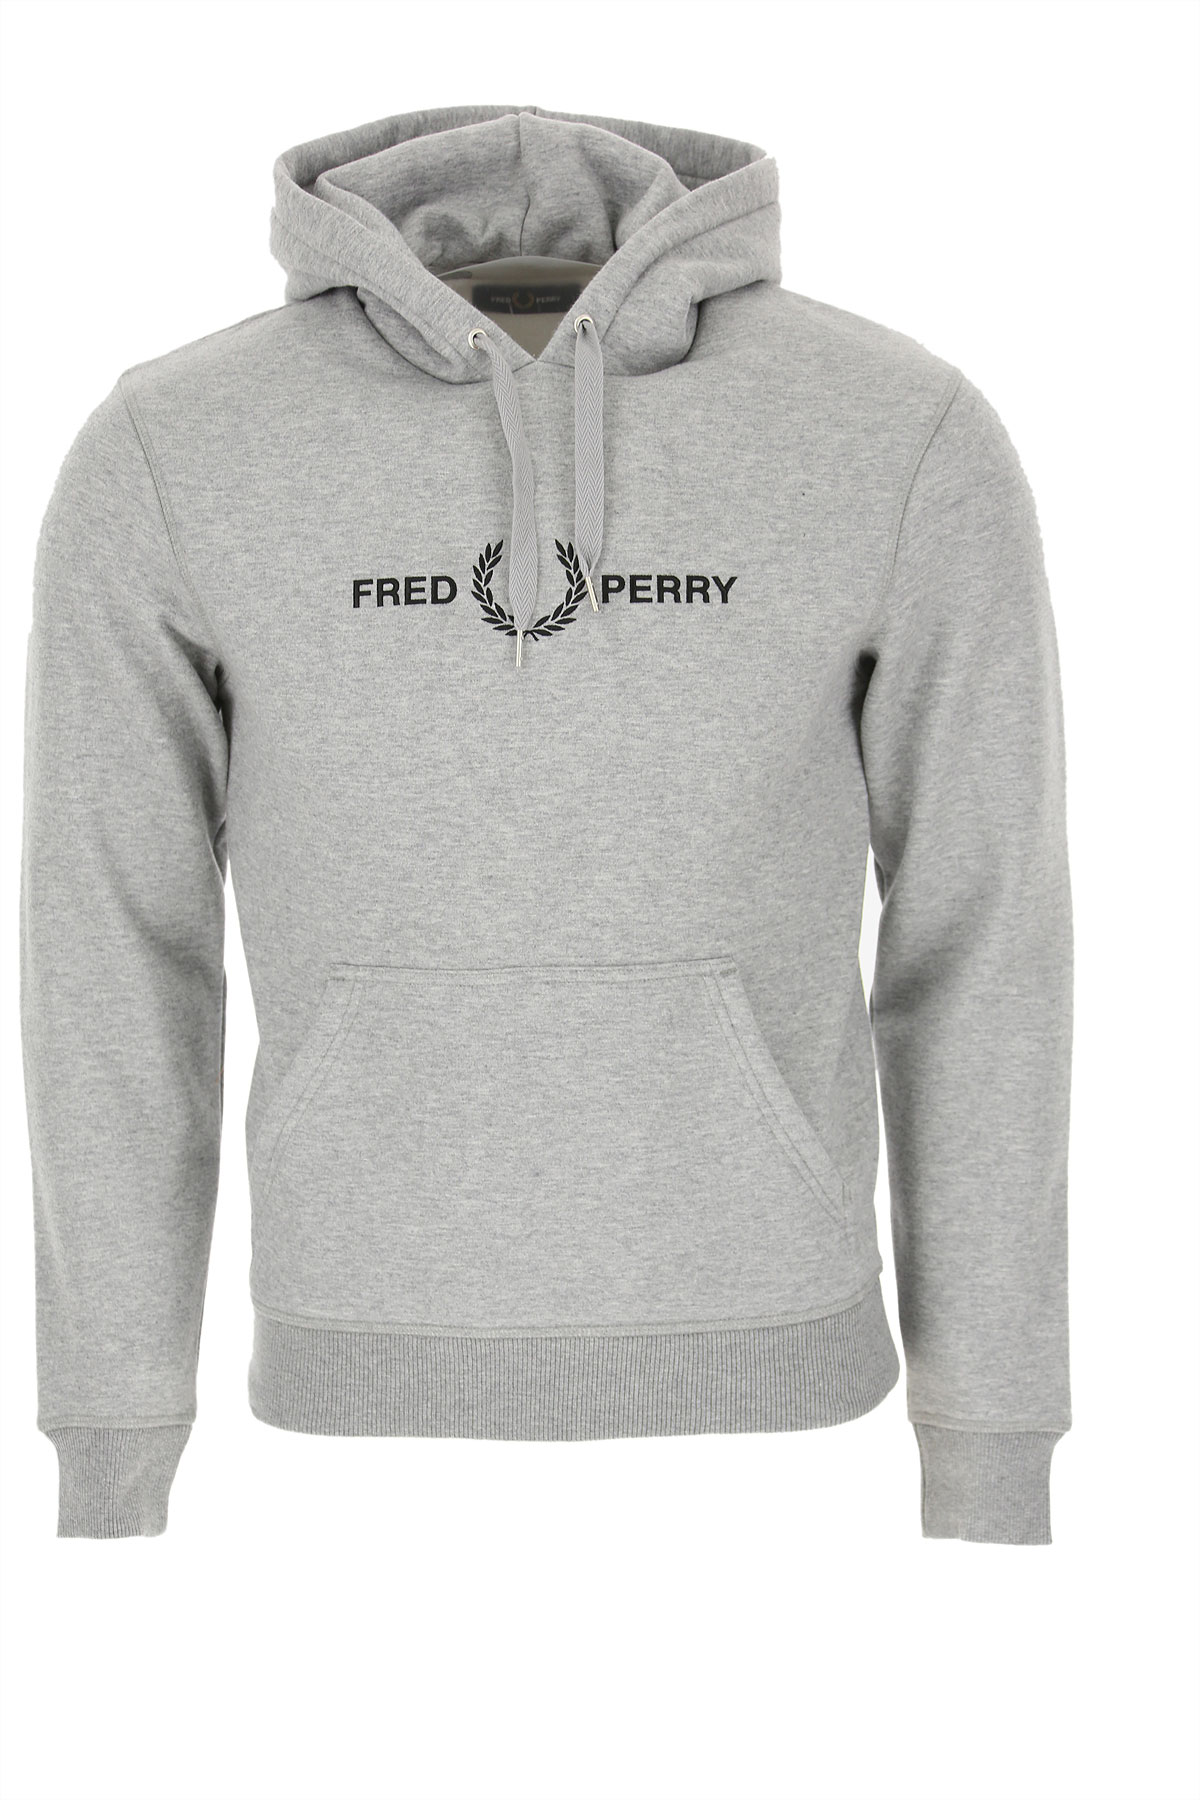 Fred Perry Sweatshirt für Herren, Kapuzenpulli, Hoodie, Sweats Günstig im Sale, Grau, Polyester, 2017, L M S XL XS